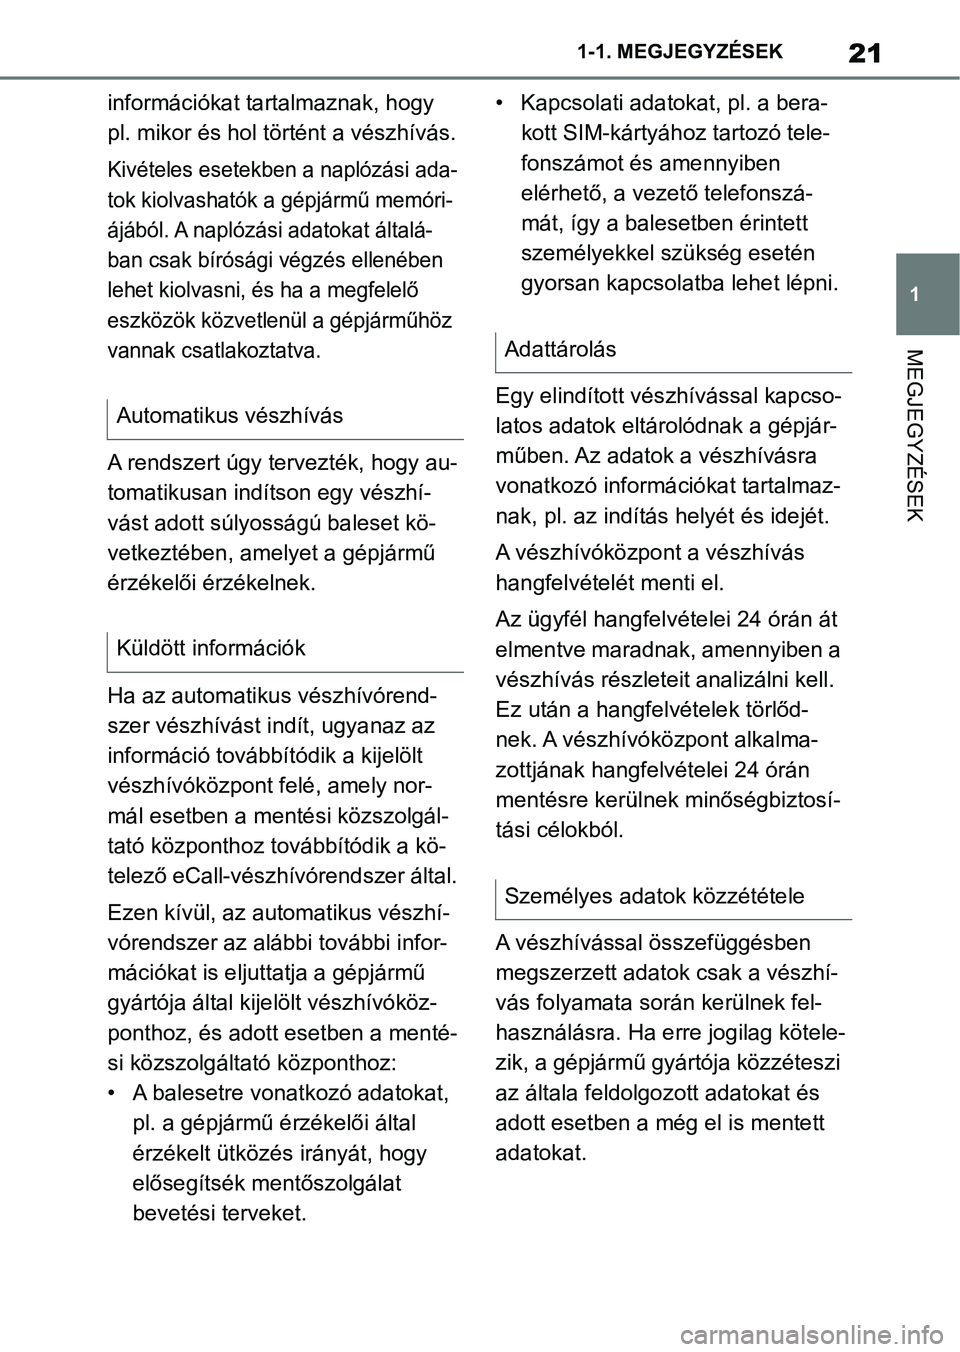 TOYOTA SUPRA 2020  Kezelési útmutató (in Hungarian) 21
1
1-1. MEGJEGYZÉSEK
MEGJEGYZÉSEK
információkat tartalmaznak, hogy 
pl. mikor és hol történt a vészhívás.
Kivételes esetekben a naplózási ada-
tok kiolvashatók a gépjármű memóri-
�